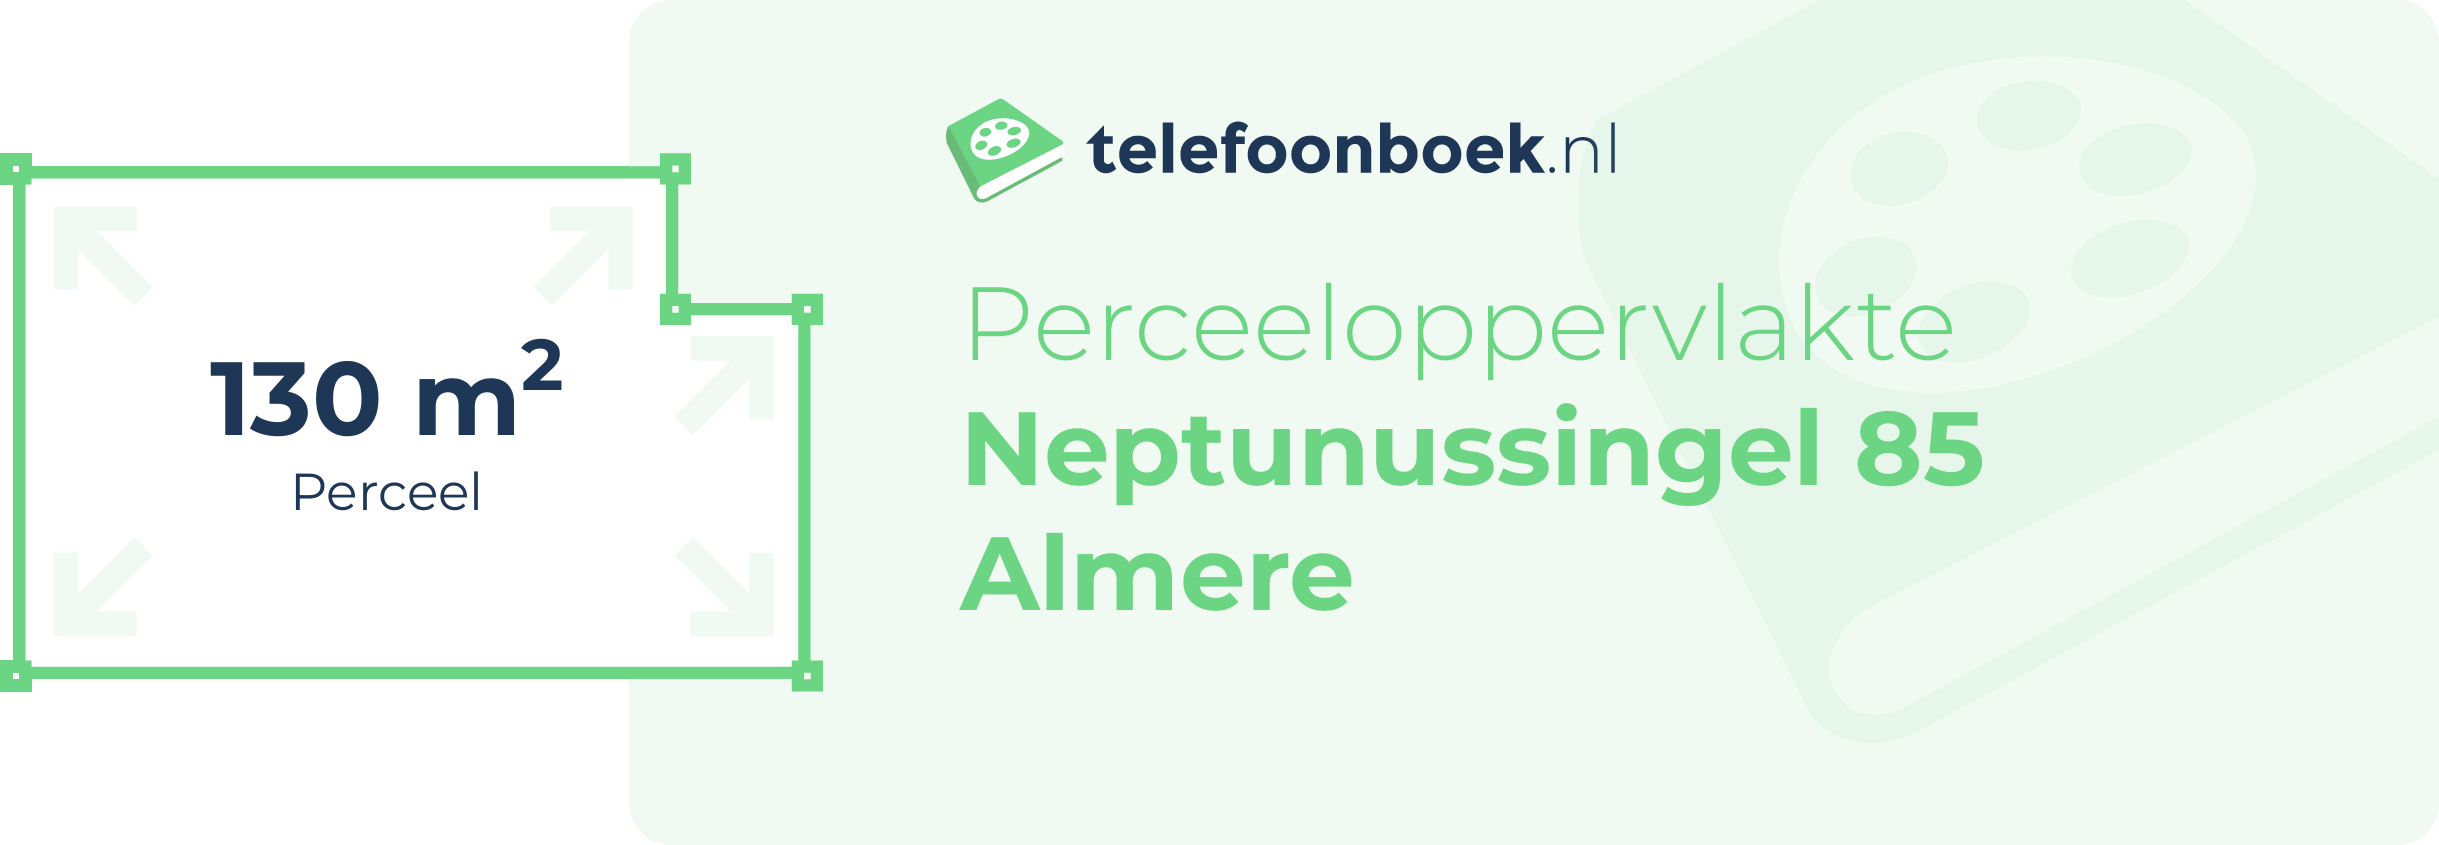 Perceeloppervlakte Neptunussingel 85 Almere